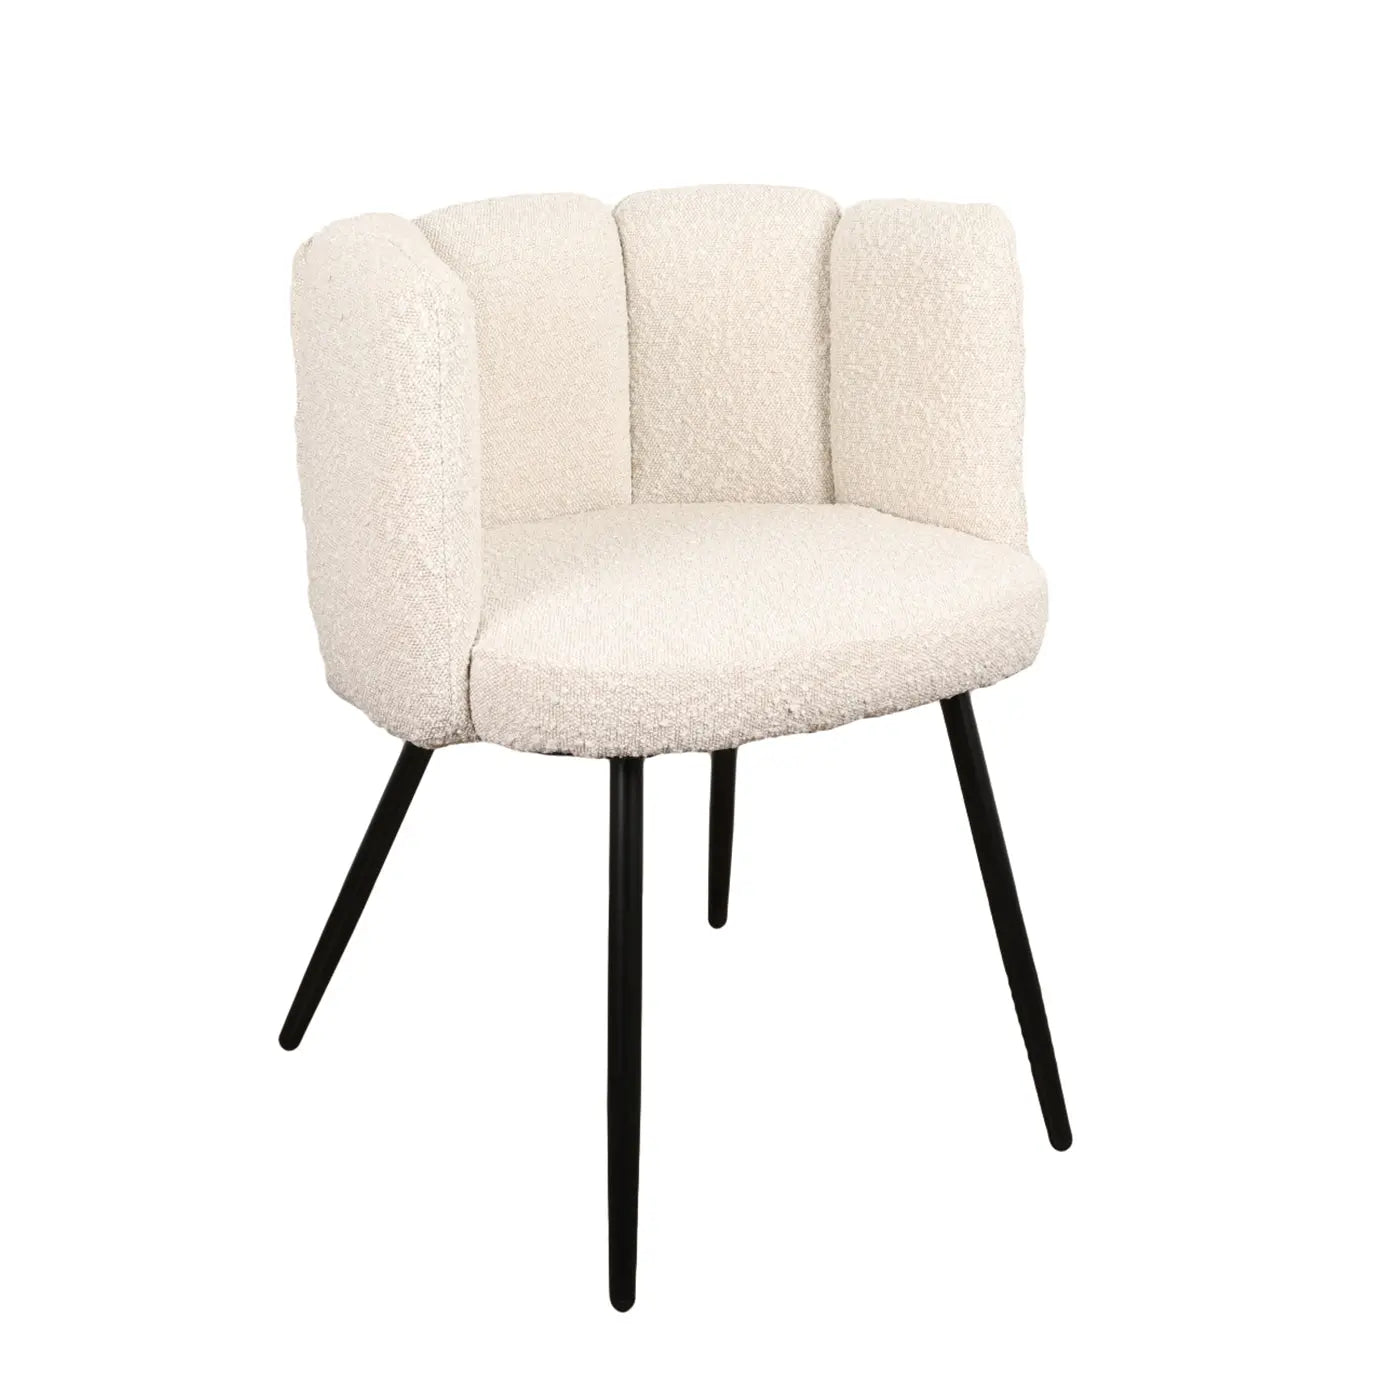 PE Cosmetics High Five chair - White Boucle Velvet - eetkamer stoelen / wachtkamer stoelen (Different Colors) 2 Stuks